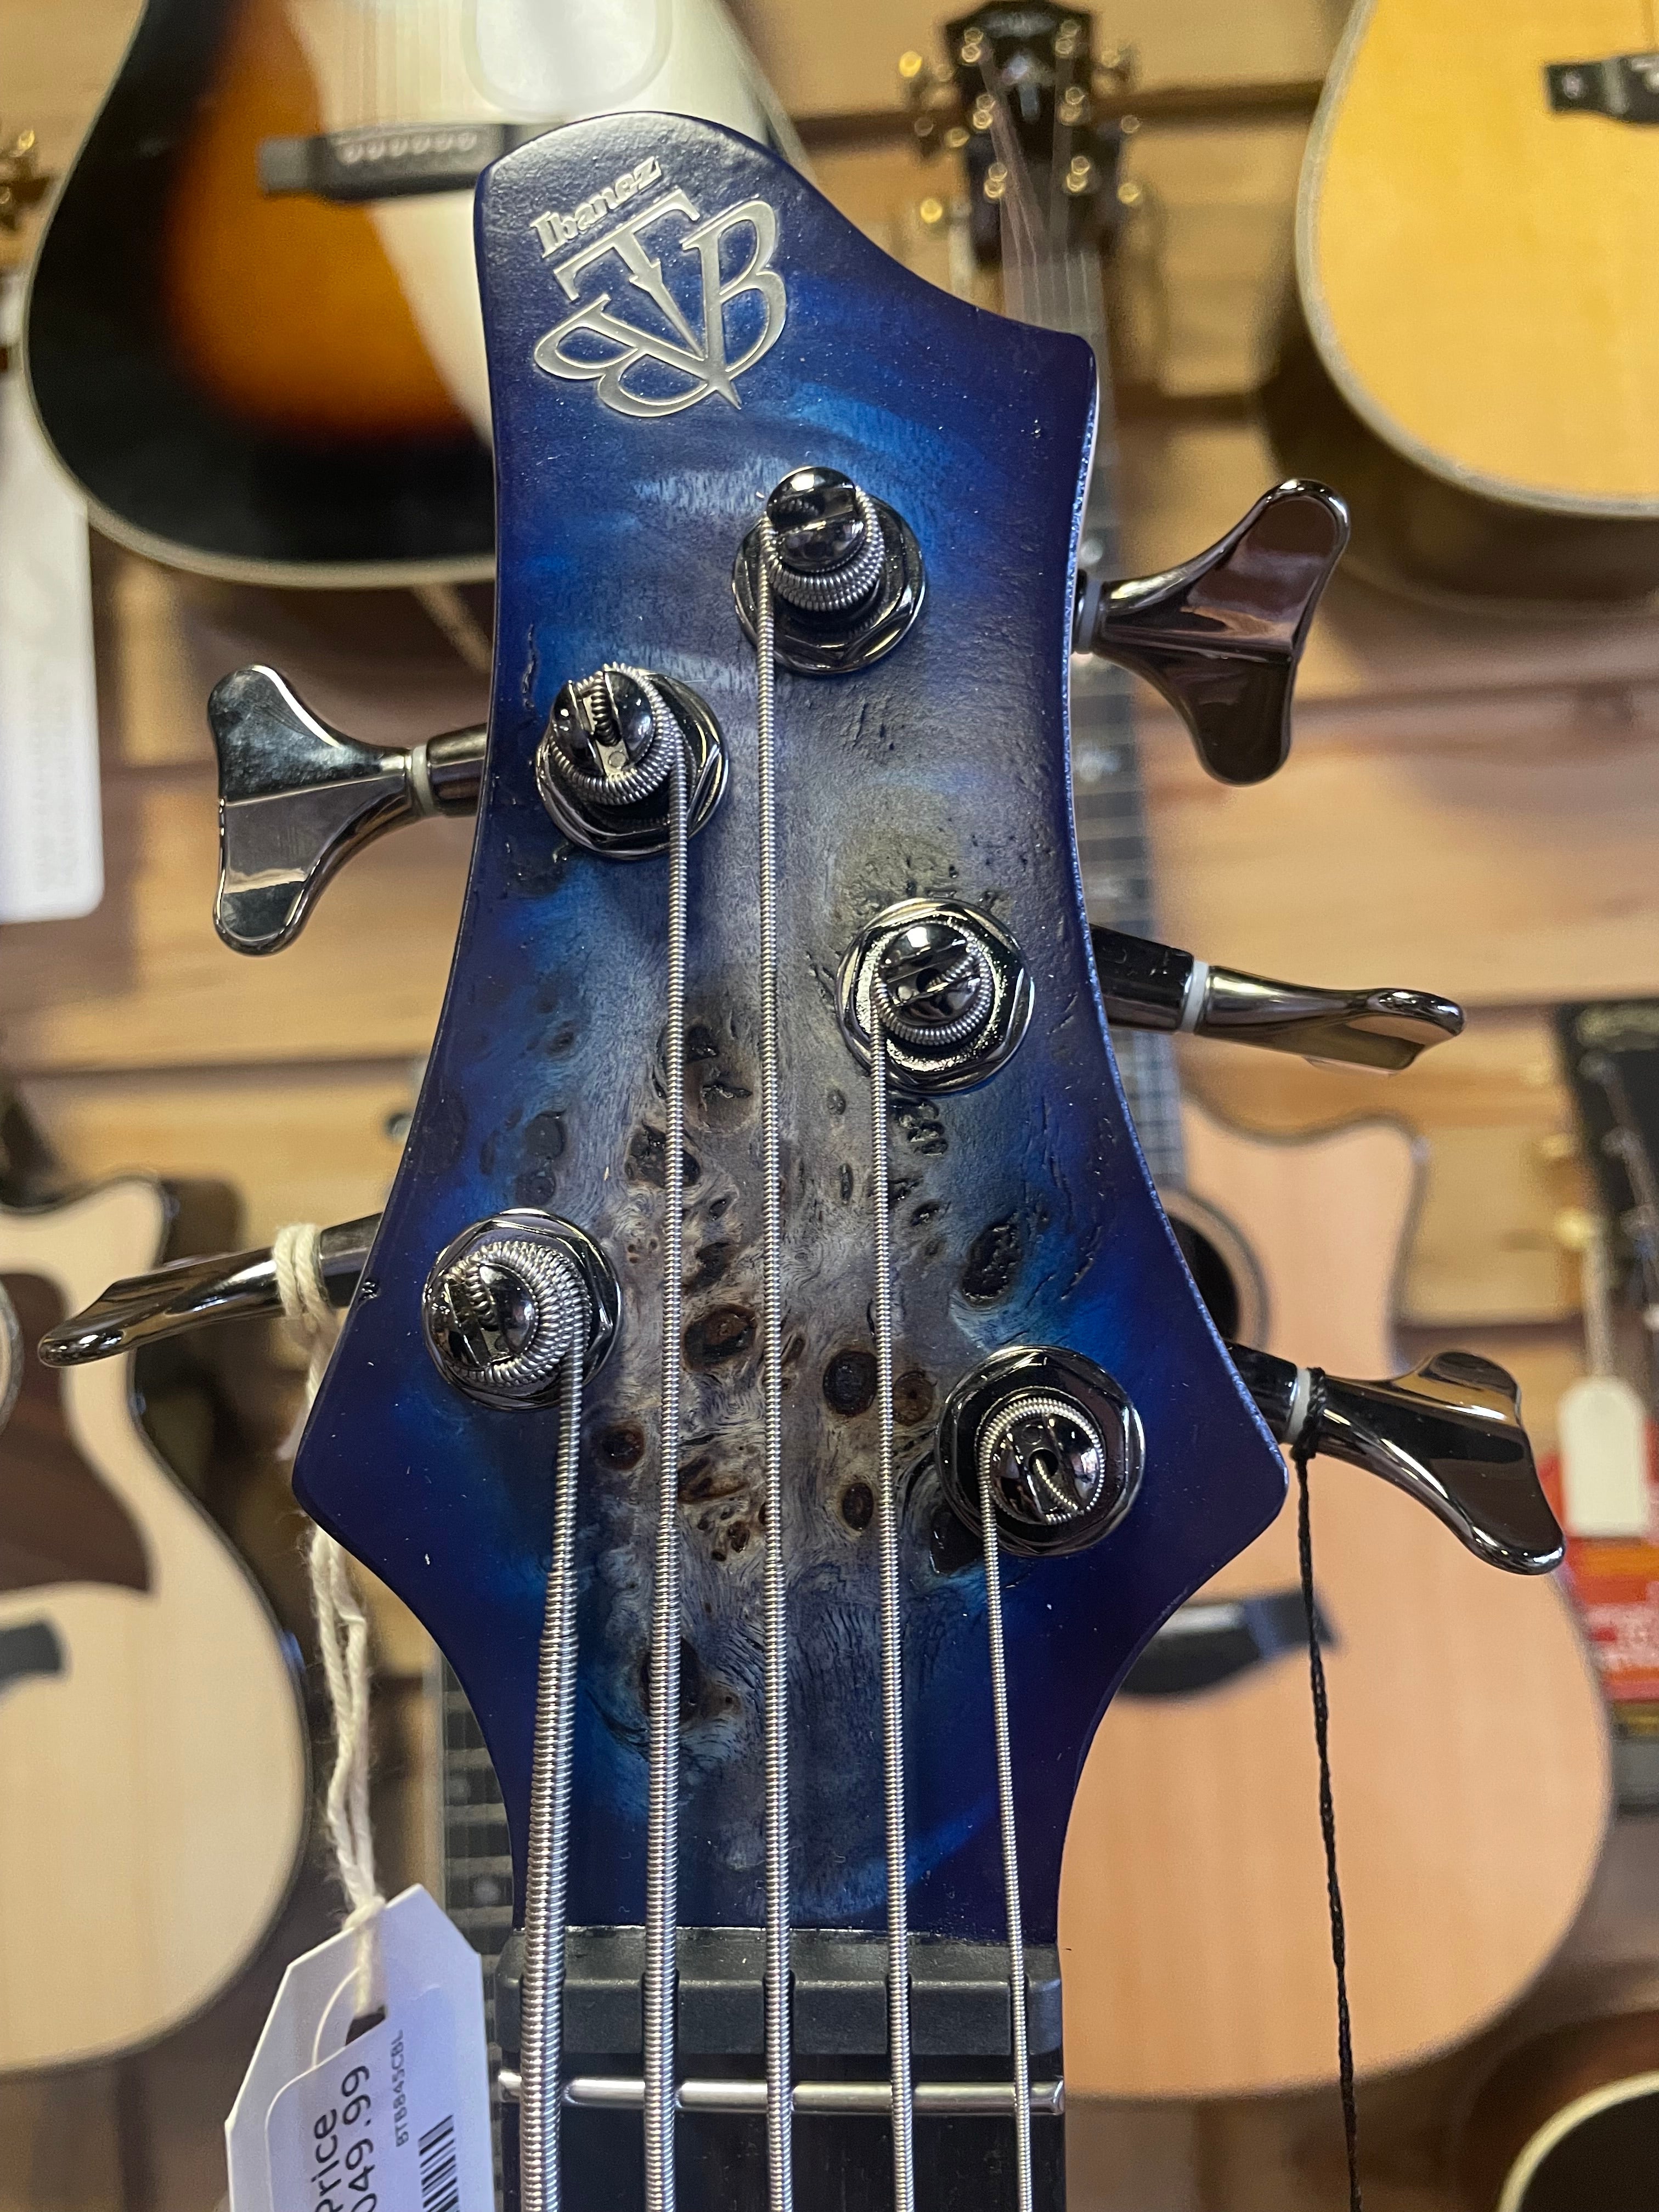 Ibanez Standard BTB845 Bass Guitar - Cerulean Blue Burst Low Gloss 